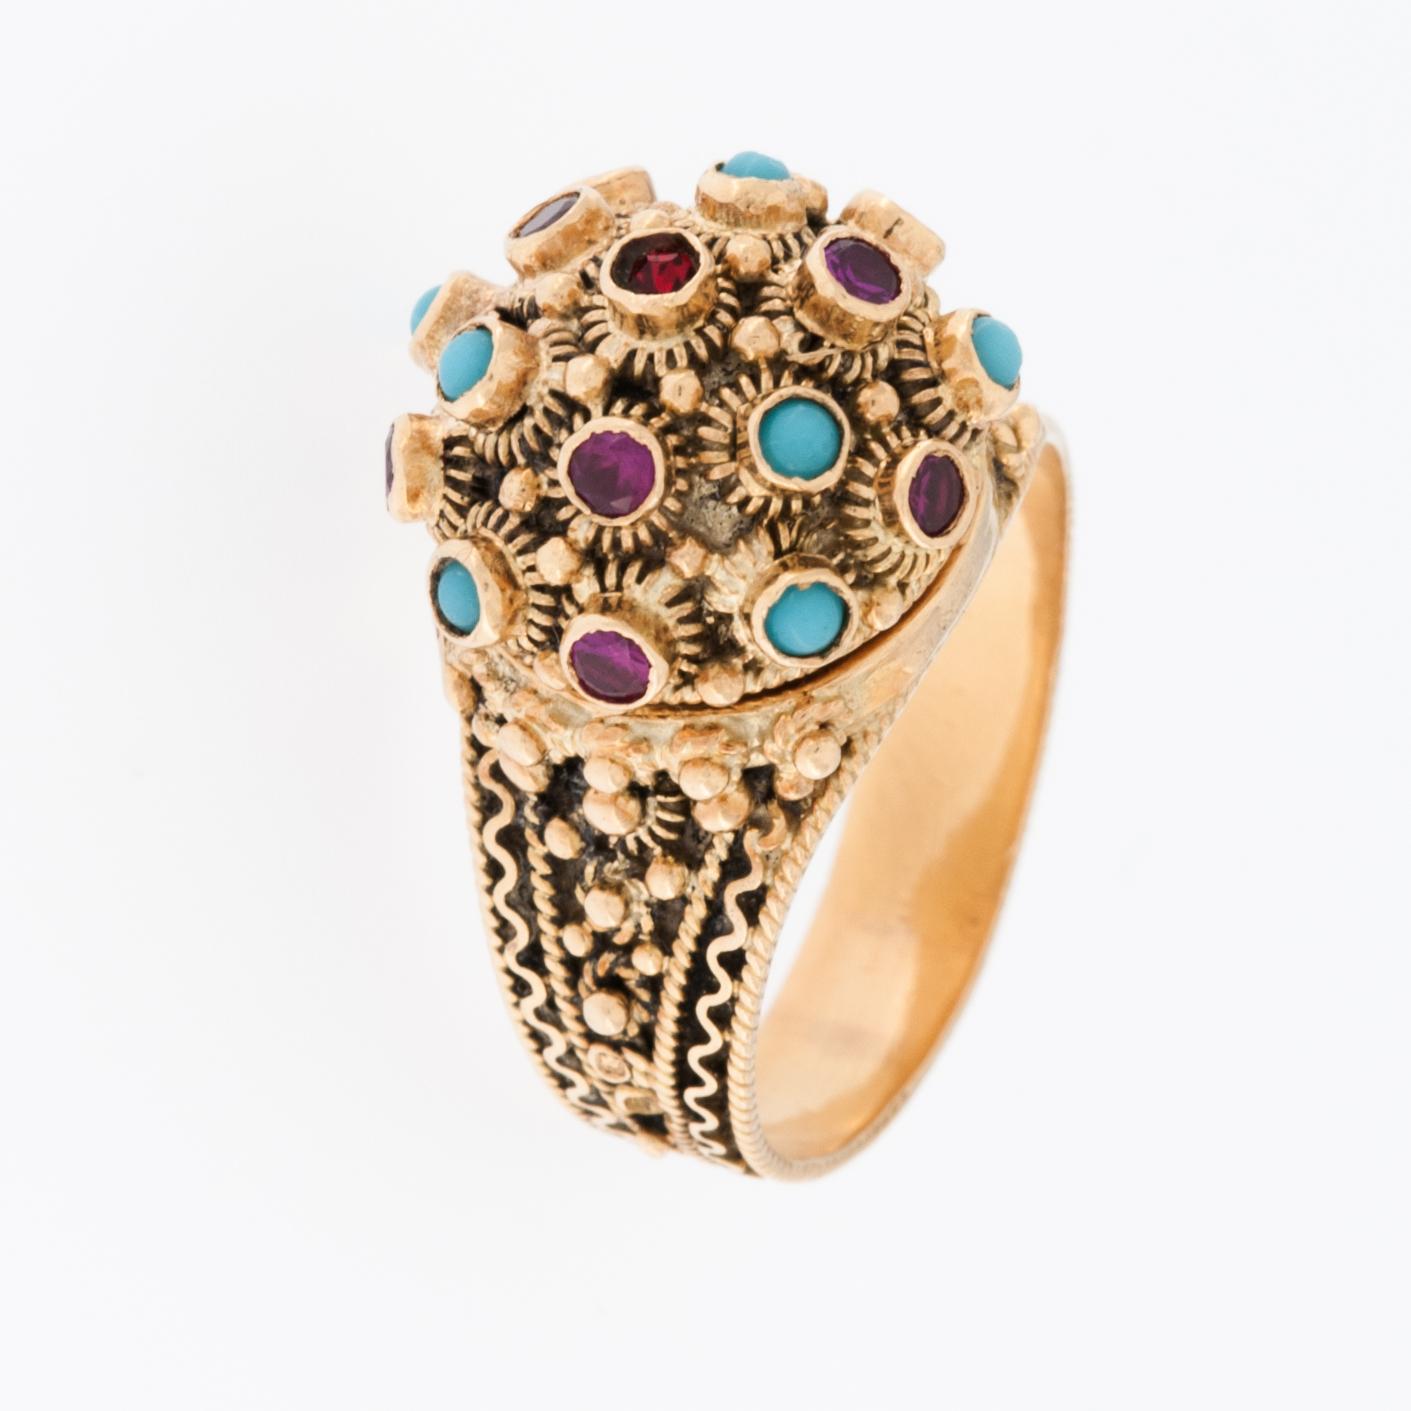 Der Türkis- und Rubinstein-Ring aus 19 Karat Gelbgold ist ein atemberaubendes, seltenes und aufwändig gearbeitetes Schmuckstück. 

Türkis ist ein Halbedelstein, der für seine schöne blaugrüne Farbe bekannt ist und oft mit Ruhe und Schutz assoziiert